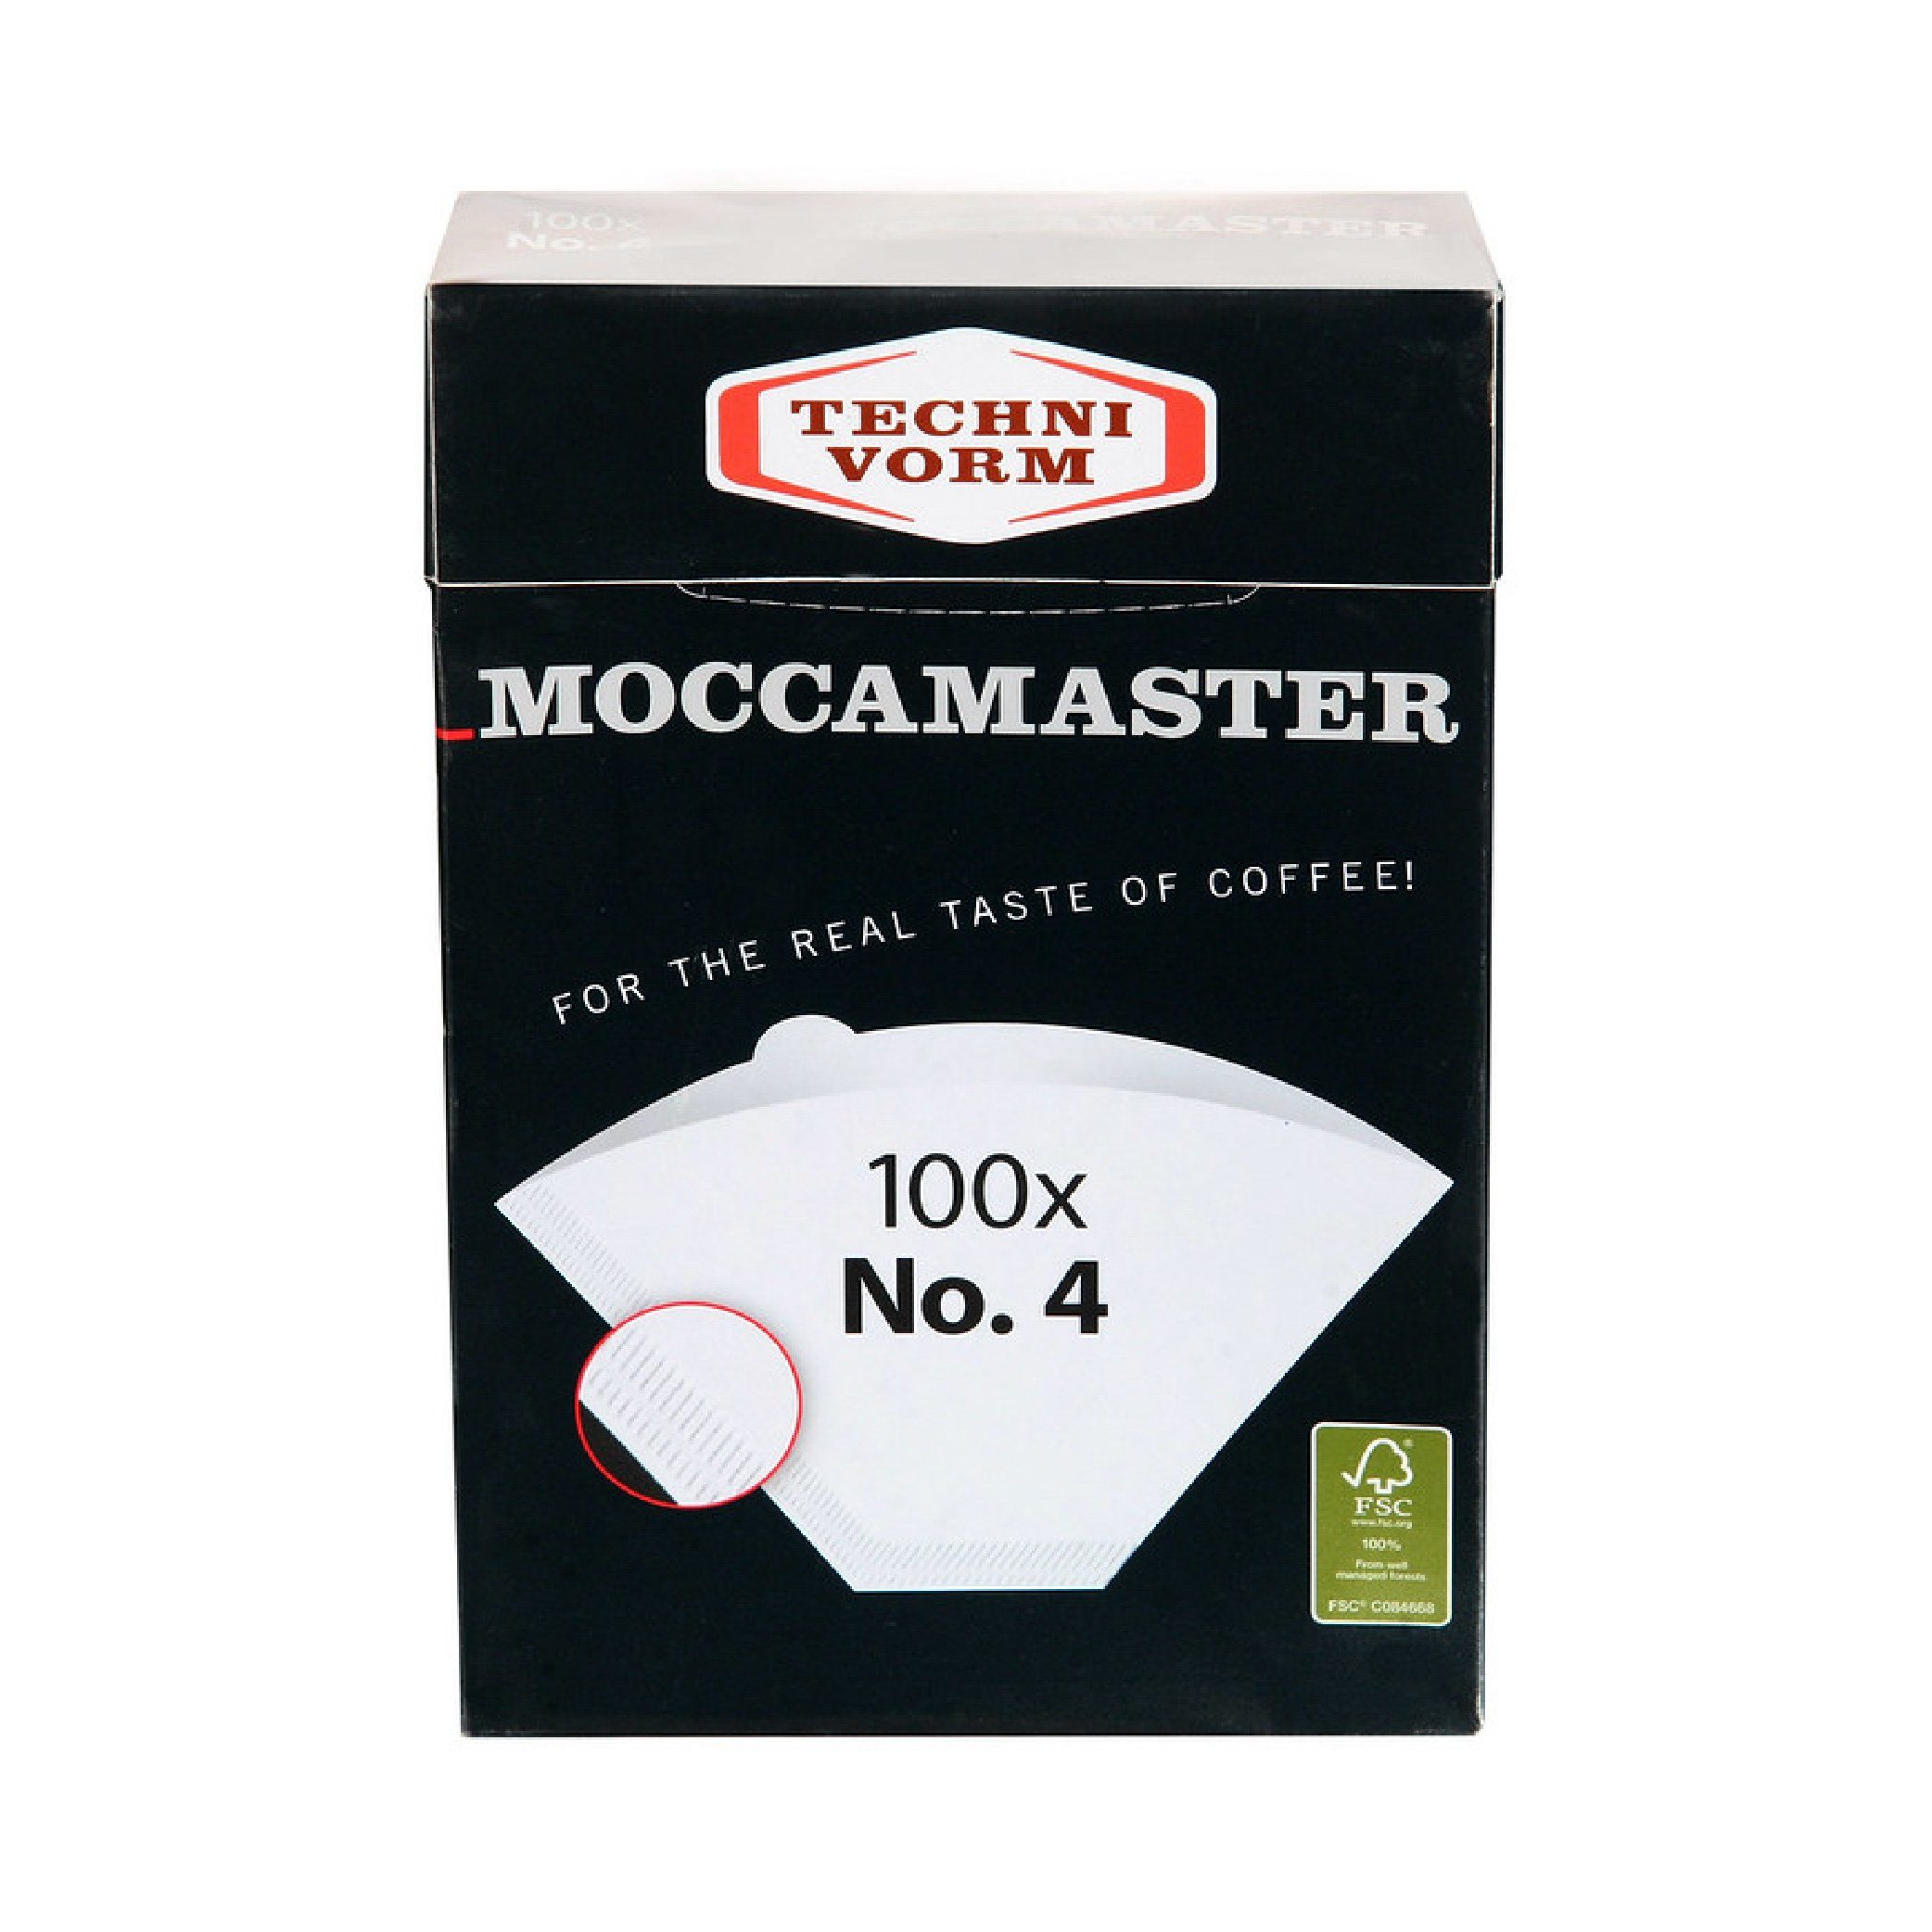 MOCCAMASTER Kaffeefilter Kaffeefilter 4 Nr